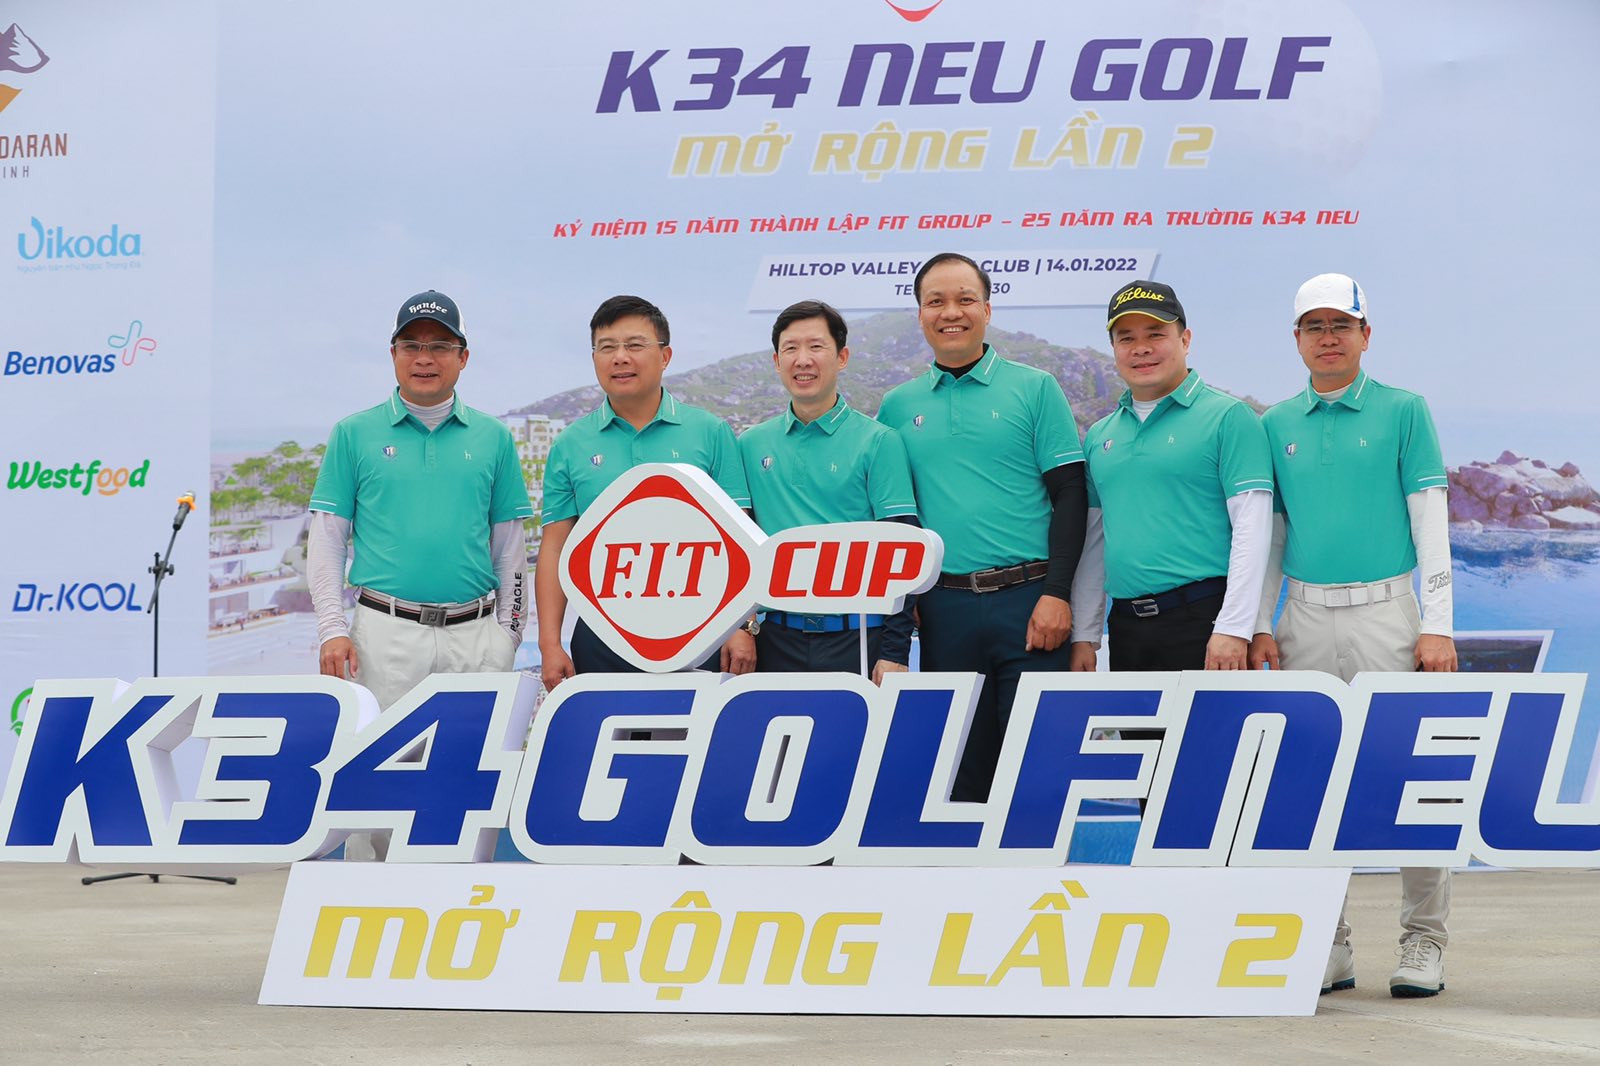 Đánh 75 gậy, golfer Trần Tuấn Anh vô địch giải FIT Cup K34 NEU Golf mở rộng lần 2 - Ảnh 2.